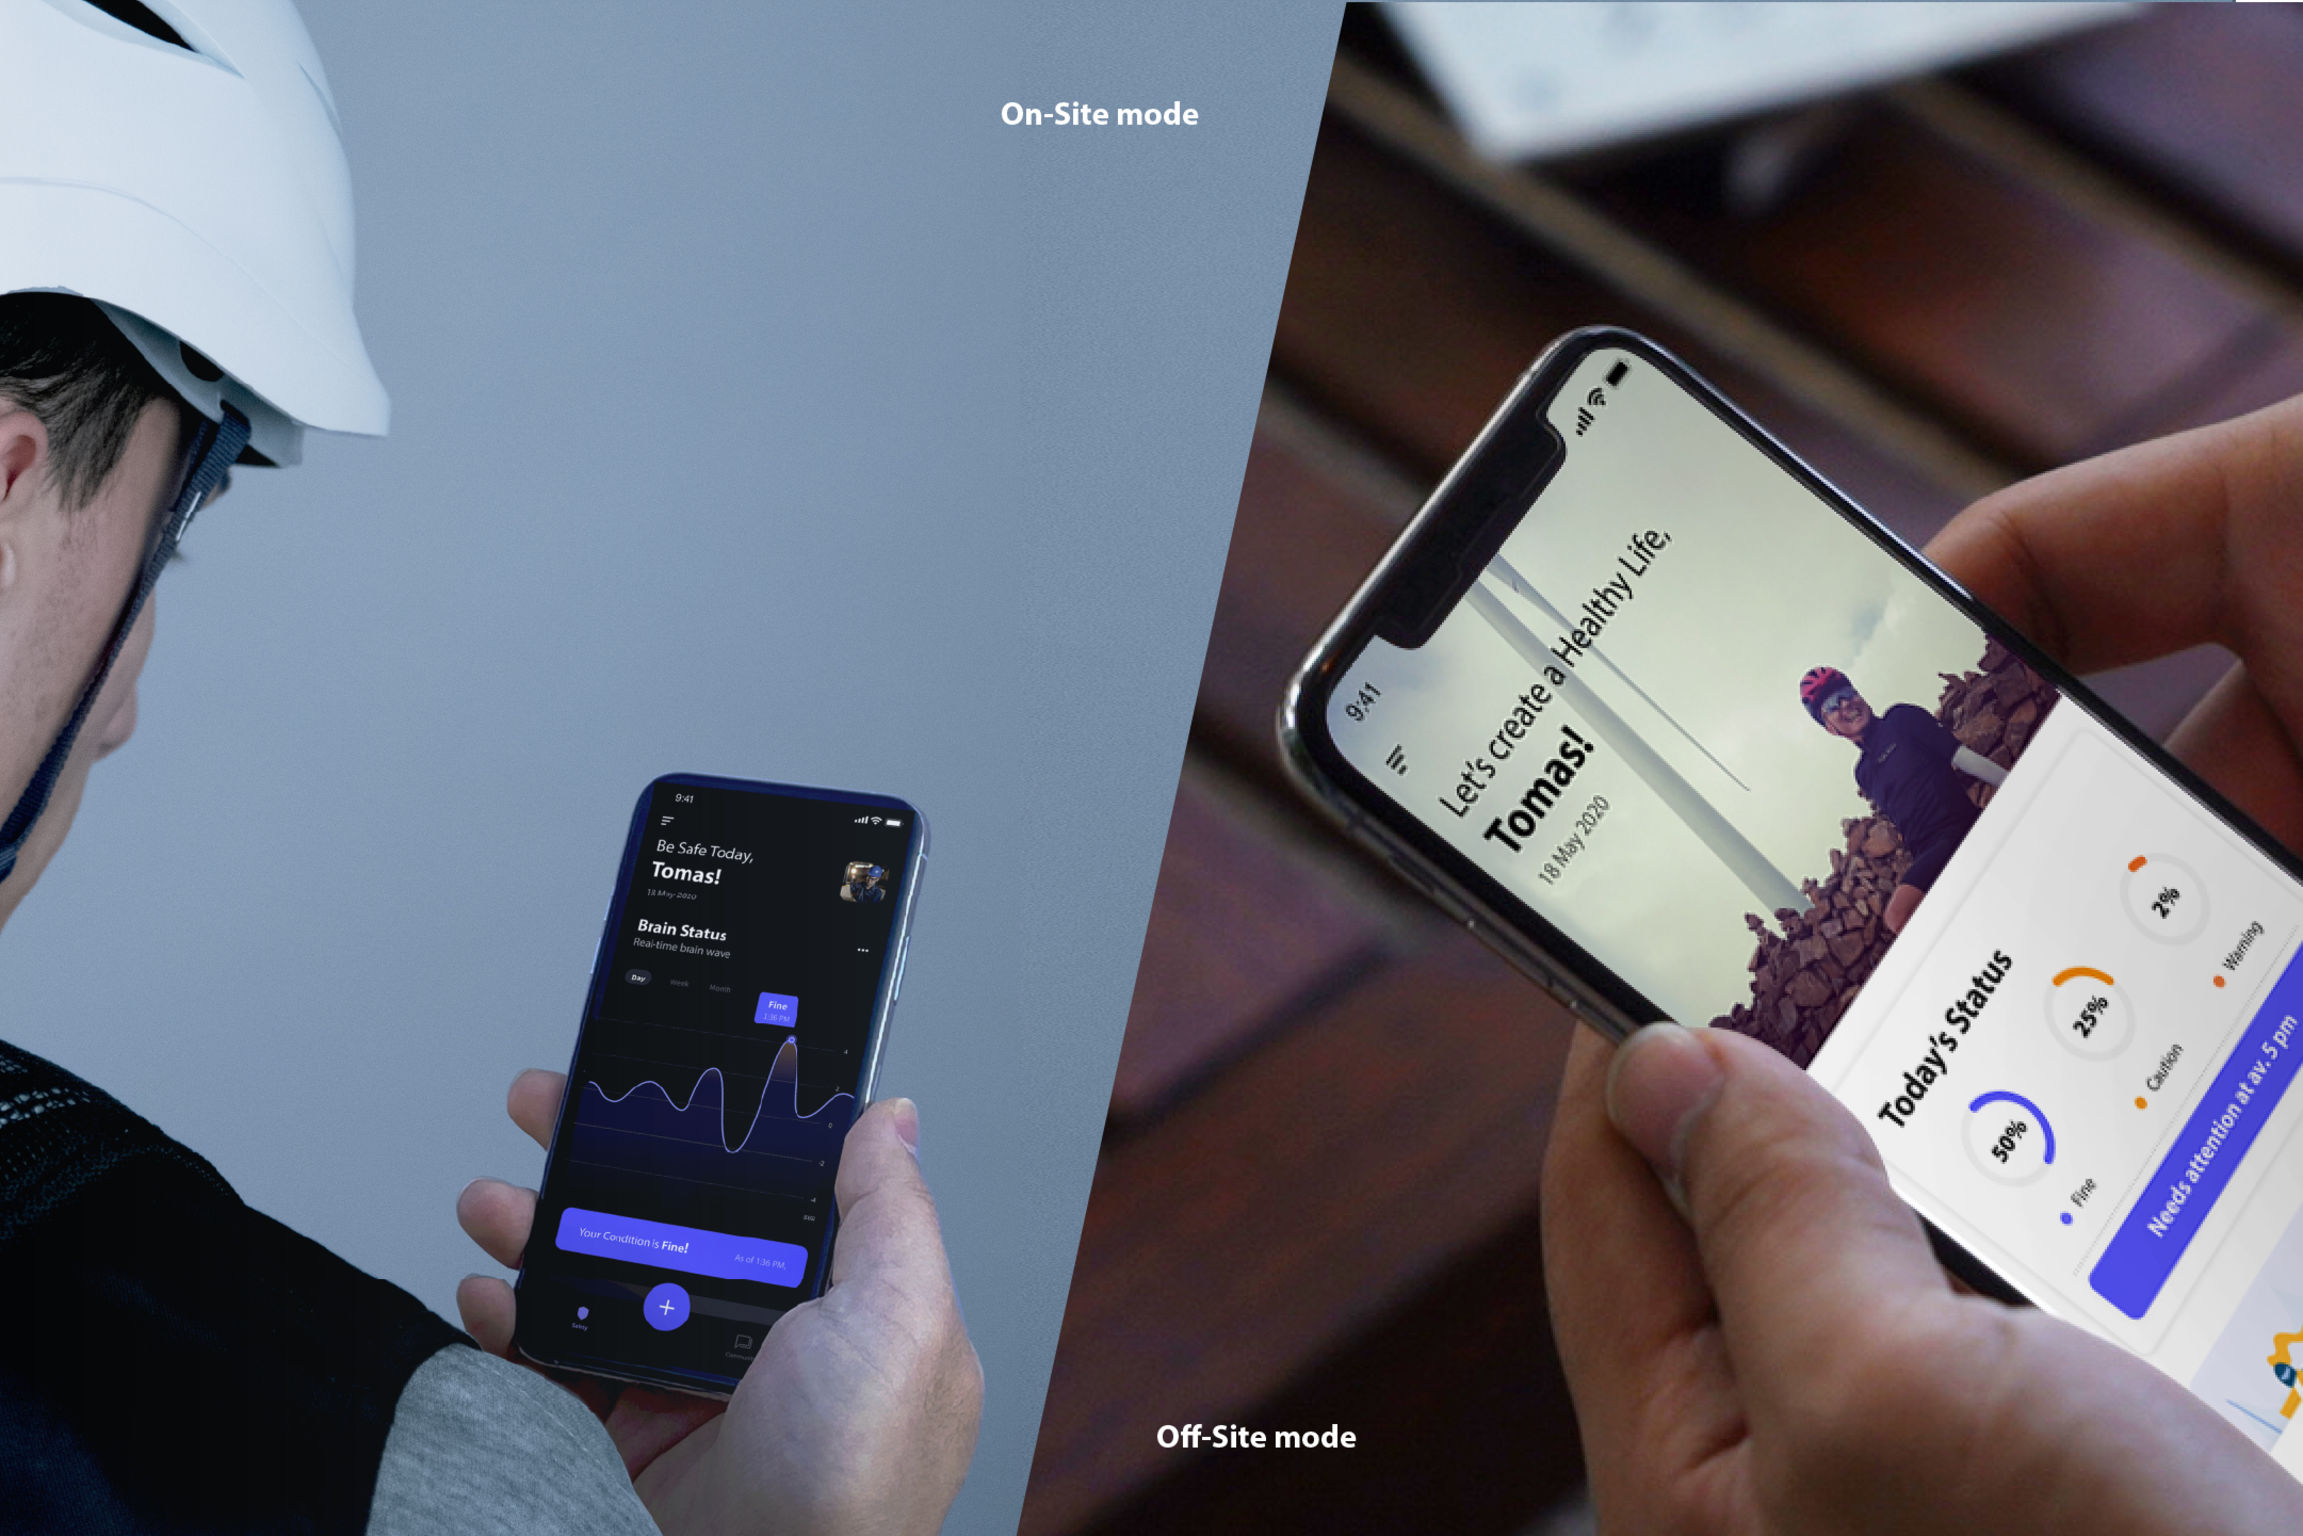 스마트헬멧과 연계한 '웨이브 앱(Wave App)' 어플리케이션 | 사진: 김관명-김황 교수팀